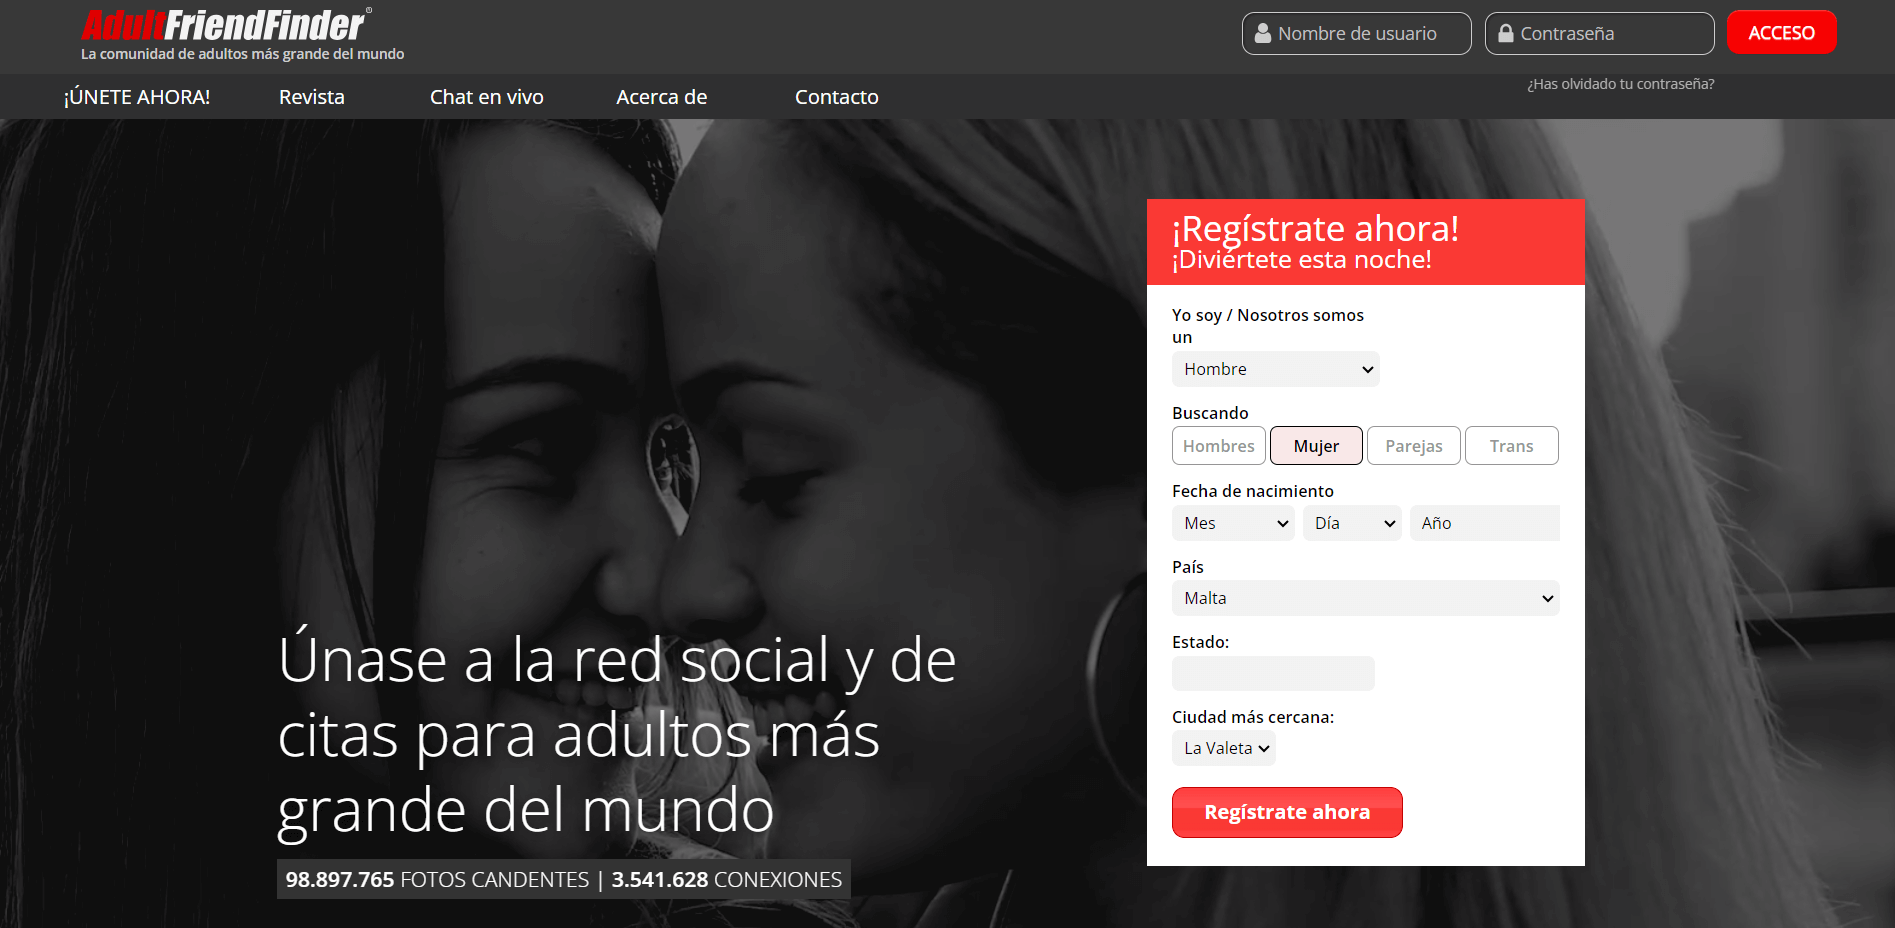 AdultFriendFinder Español